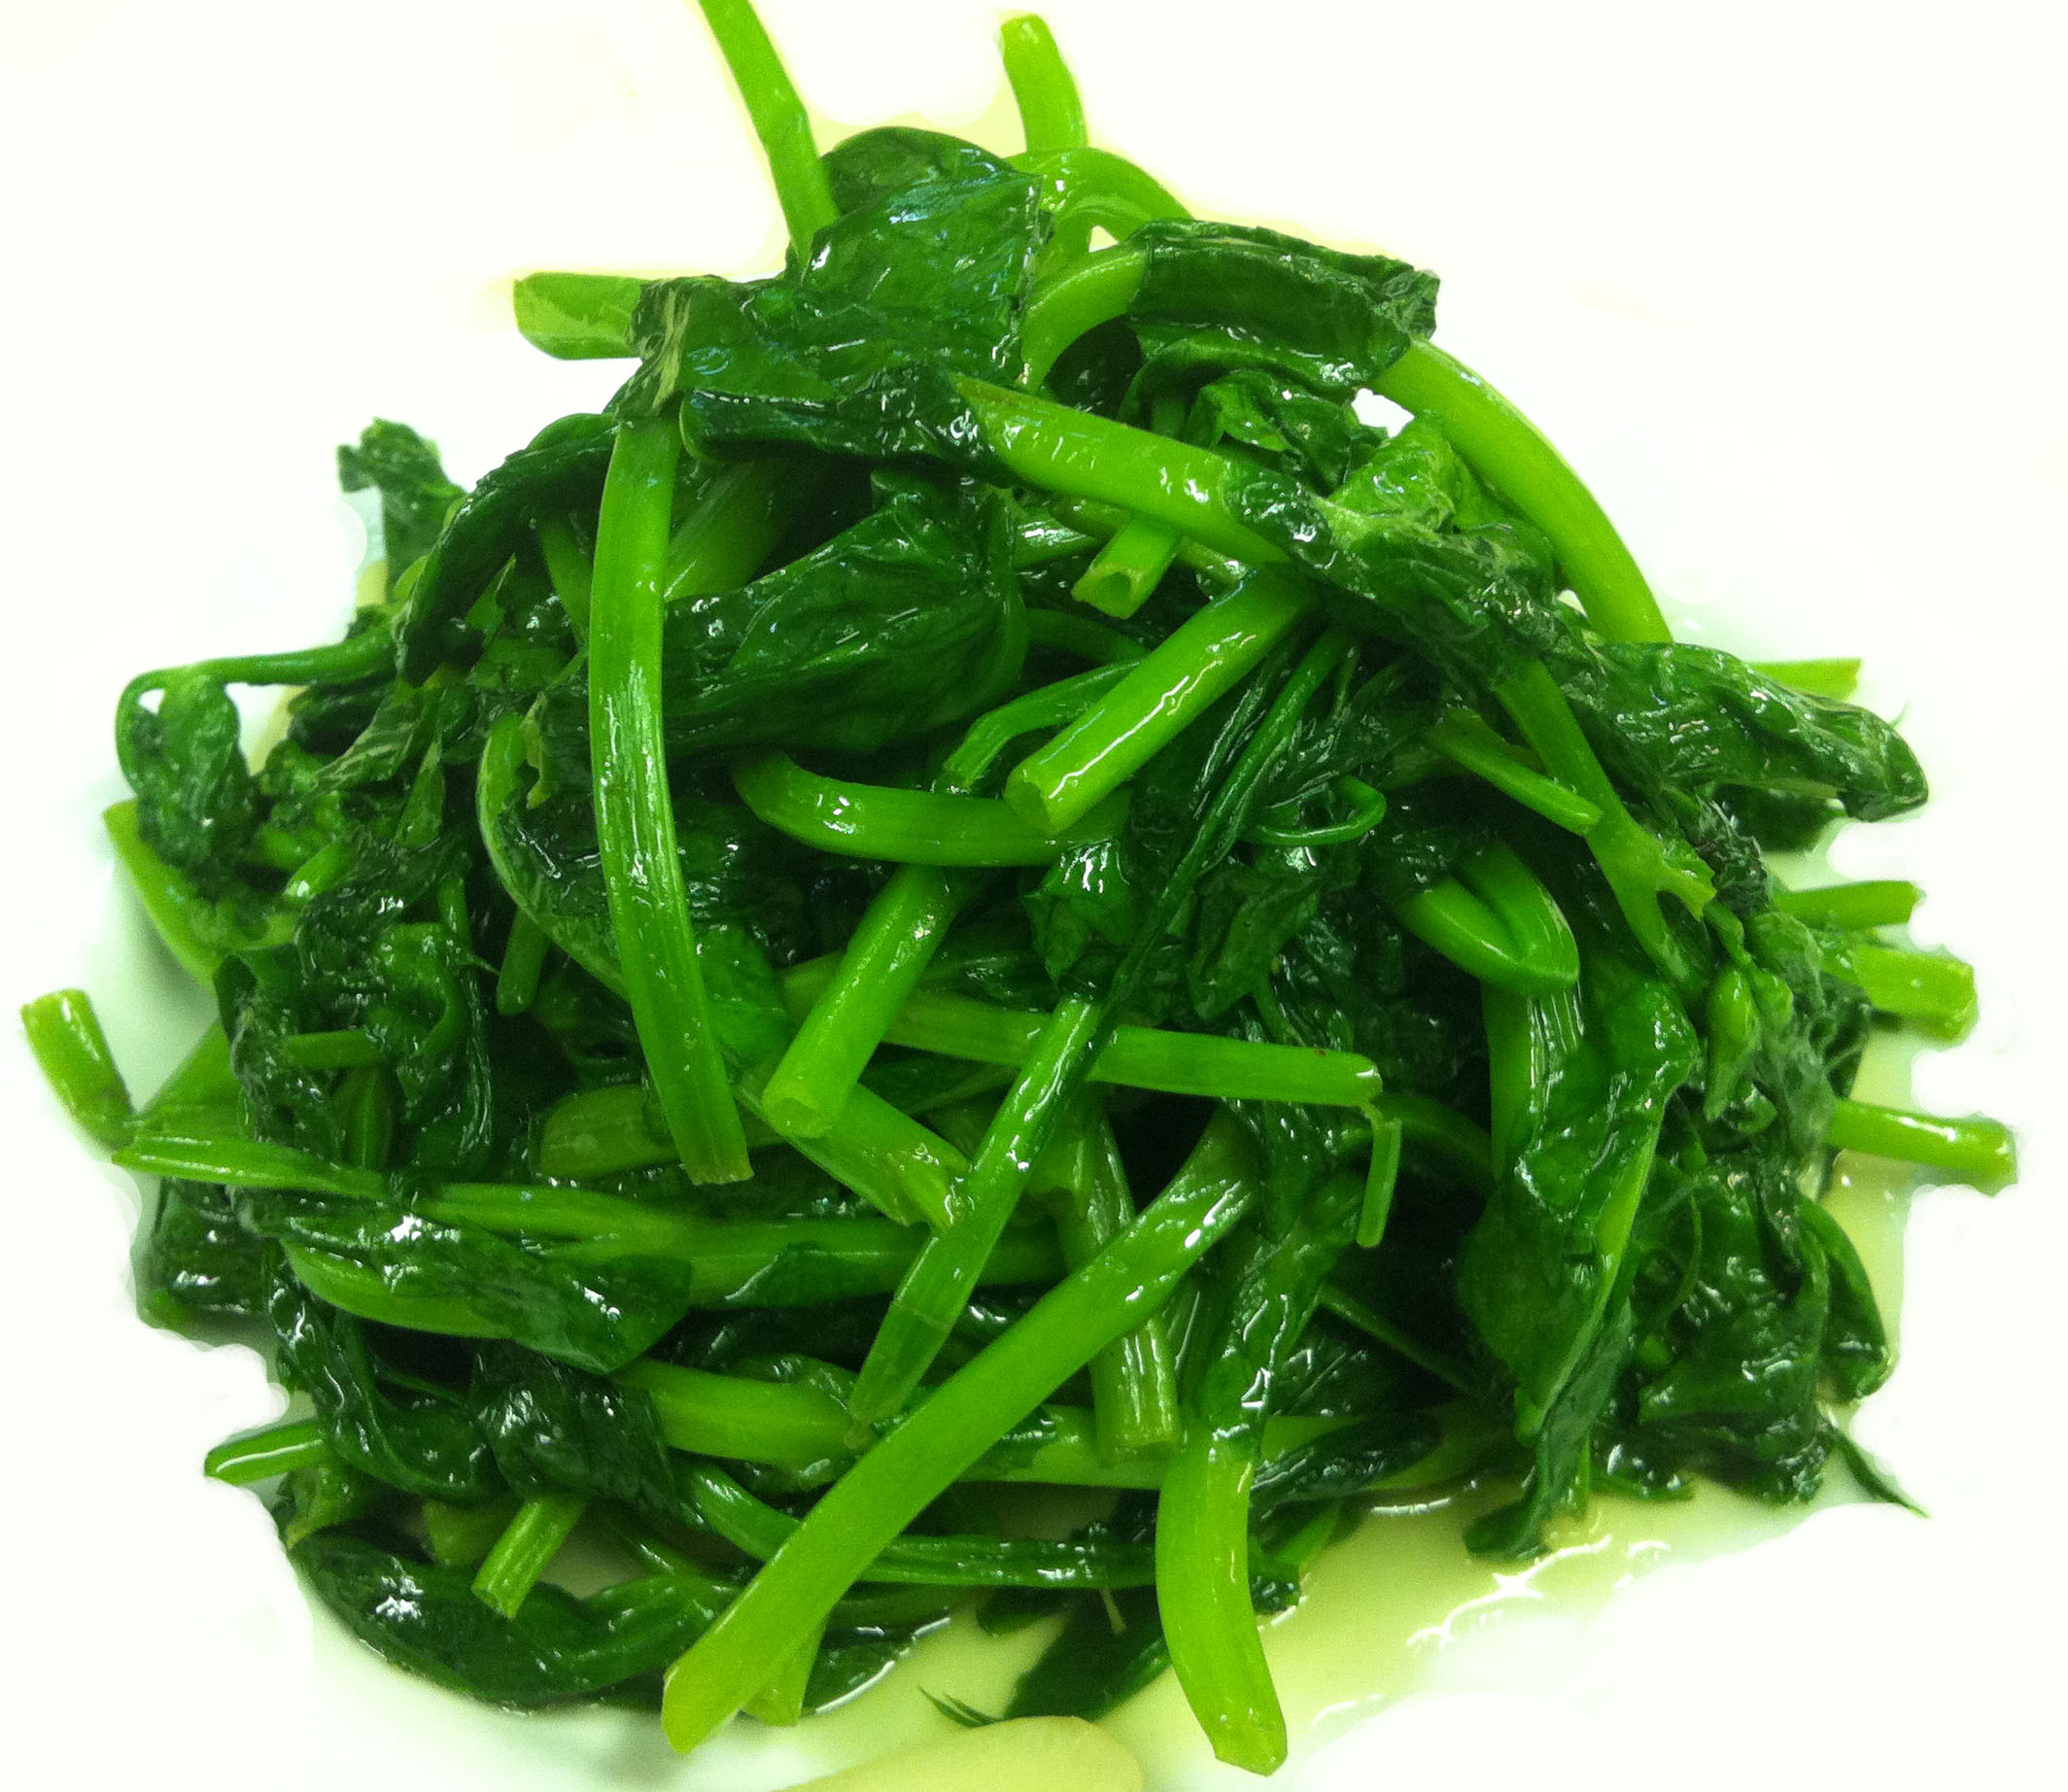 Order Pea Pod Leaf with Garlic蒜片豆苗 food online from Chengdu 23 store, Wayne on bringmethat.com